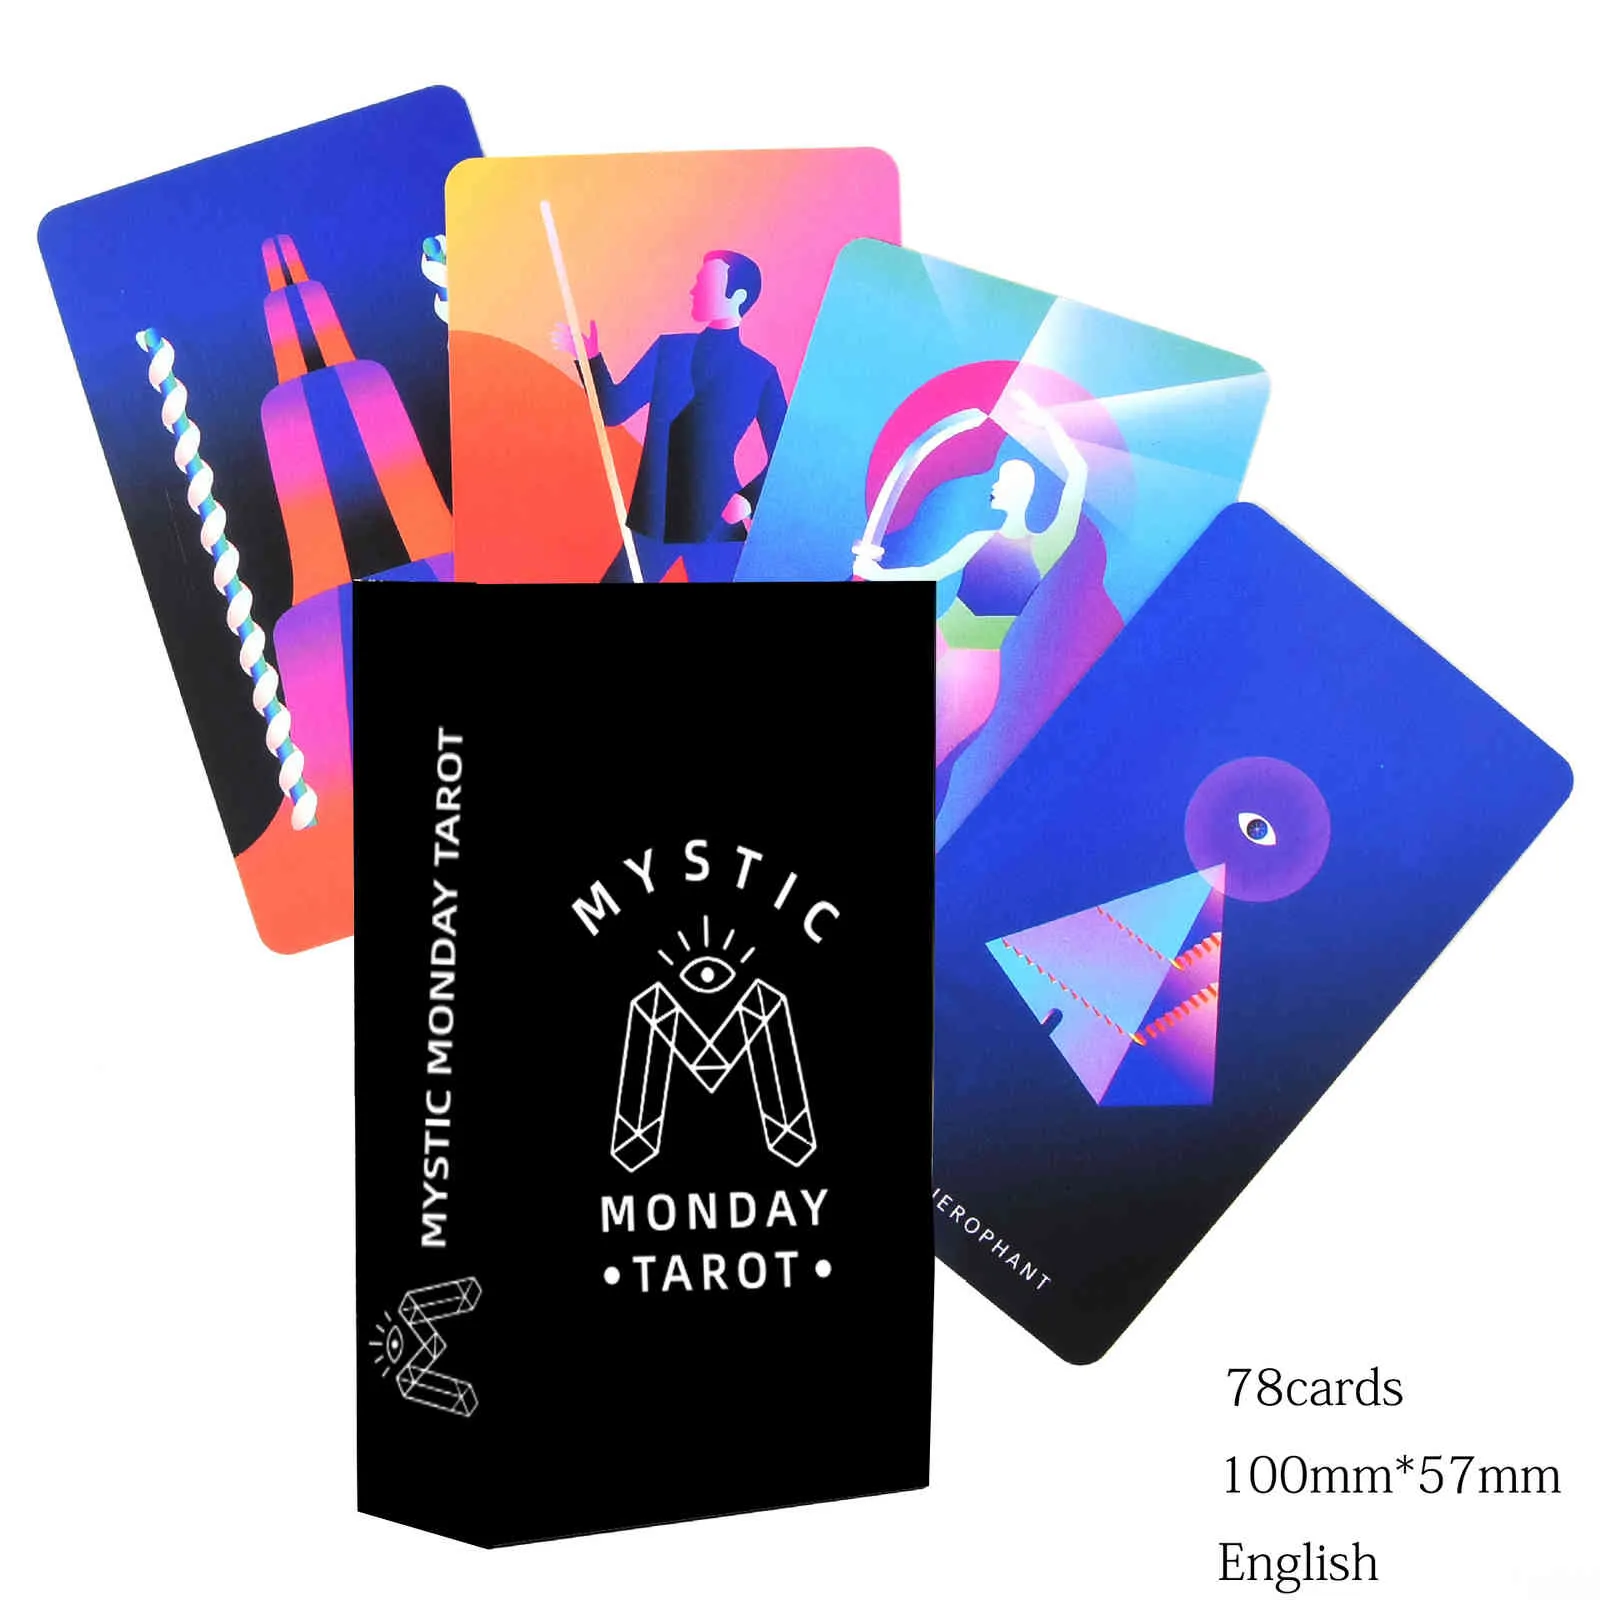 New Mystic Mondays Tarot.Cards Deck Cartes de Tarot pour débutants Ot Party Game DeckMystical Divination With Guid Card Gifts